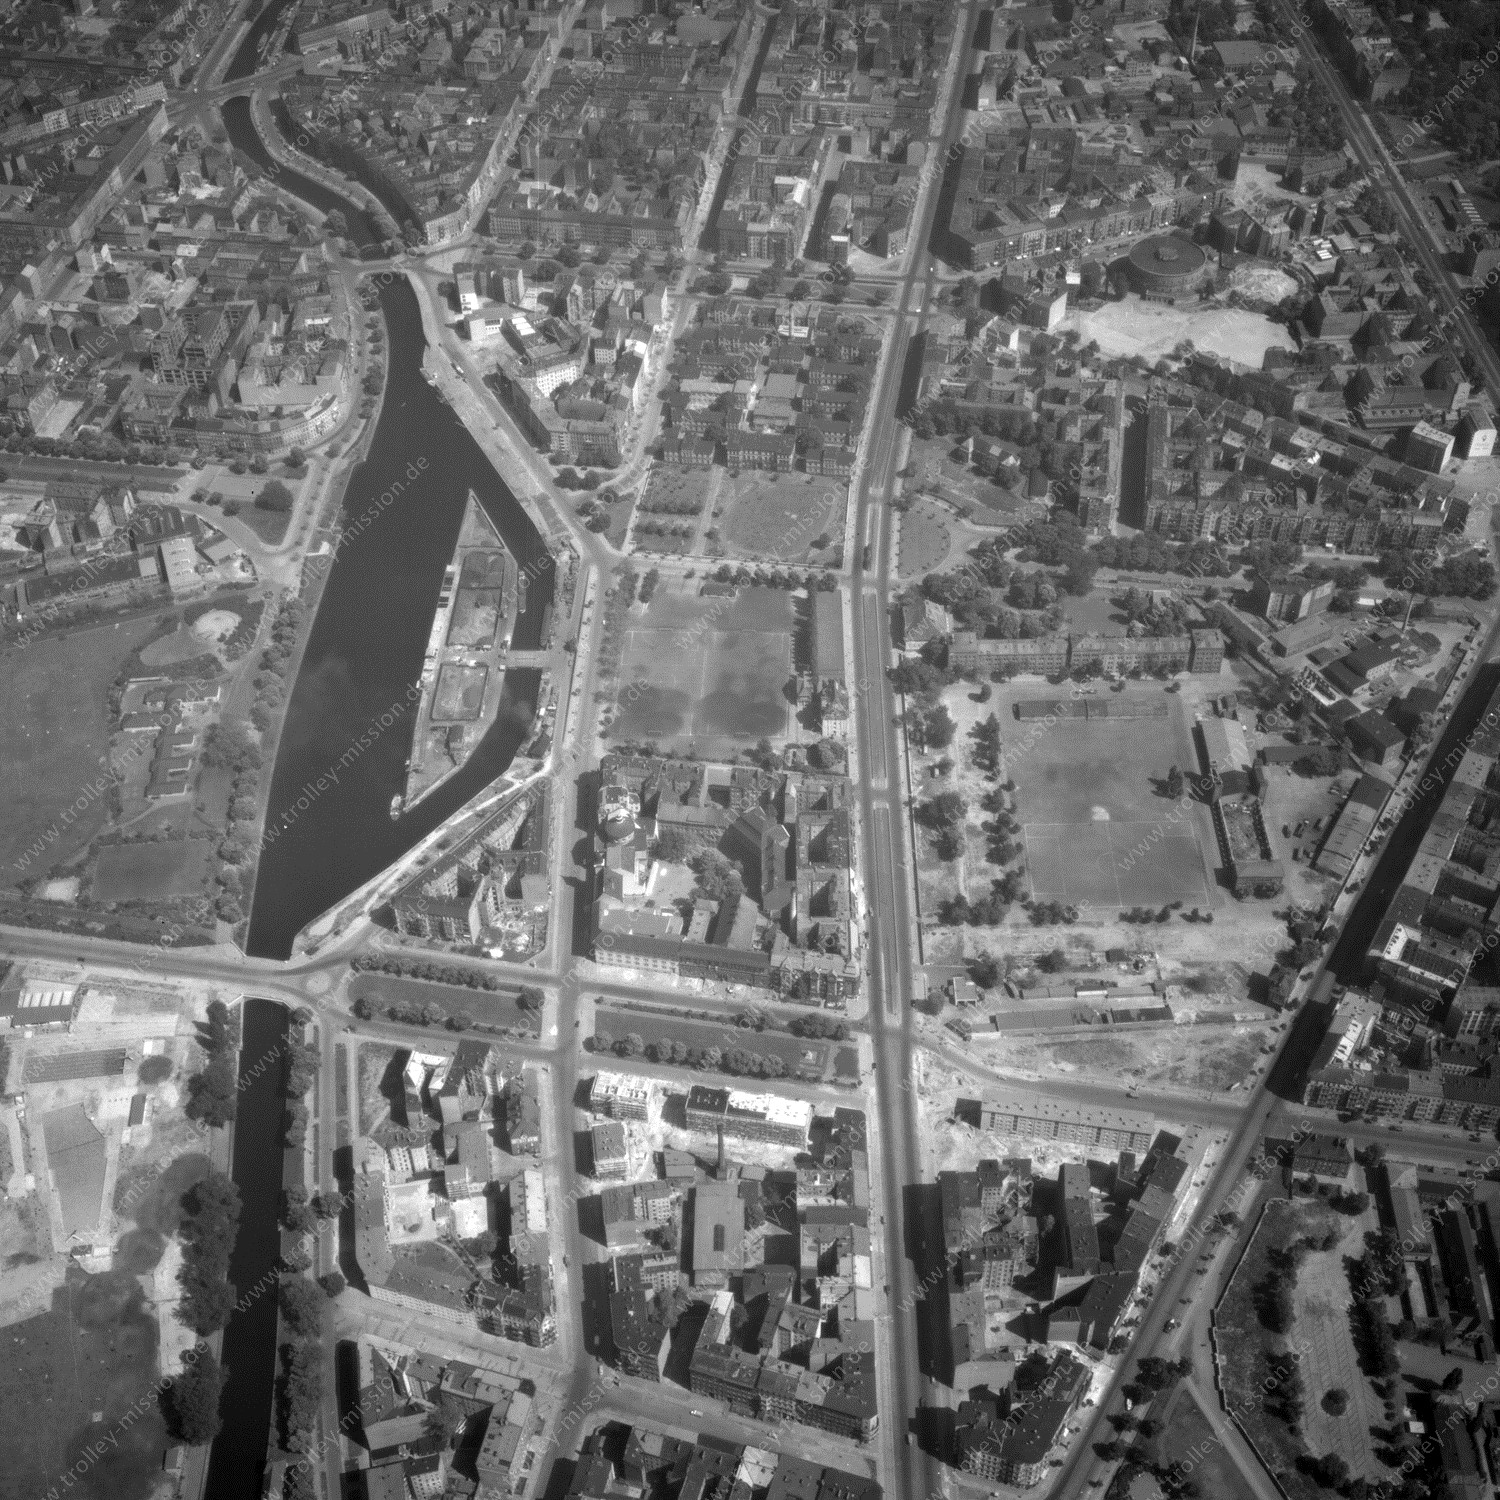 Alte Fotos und Luftbilder von Berlin - Luftbildaufnahme Nr. 05 - Historische Luftaufnahmen von West-Berlin aus dem Jahr 1954 - Flugstrecke Kilo